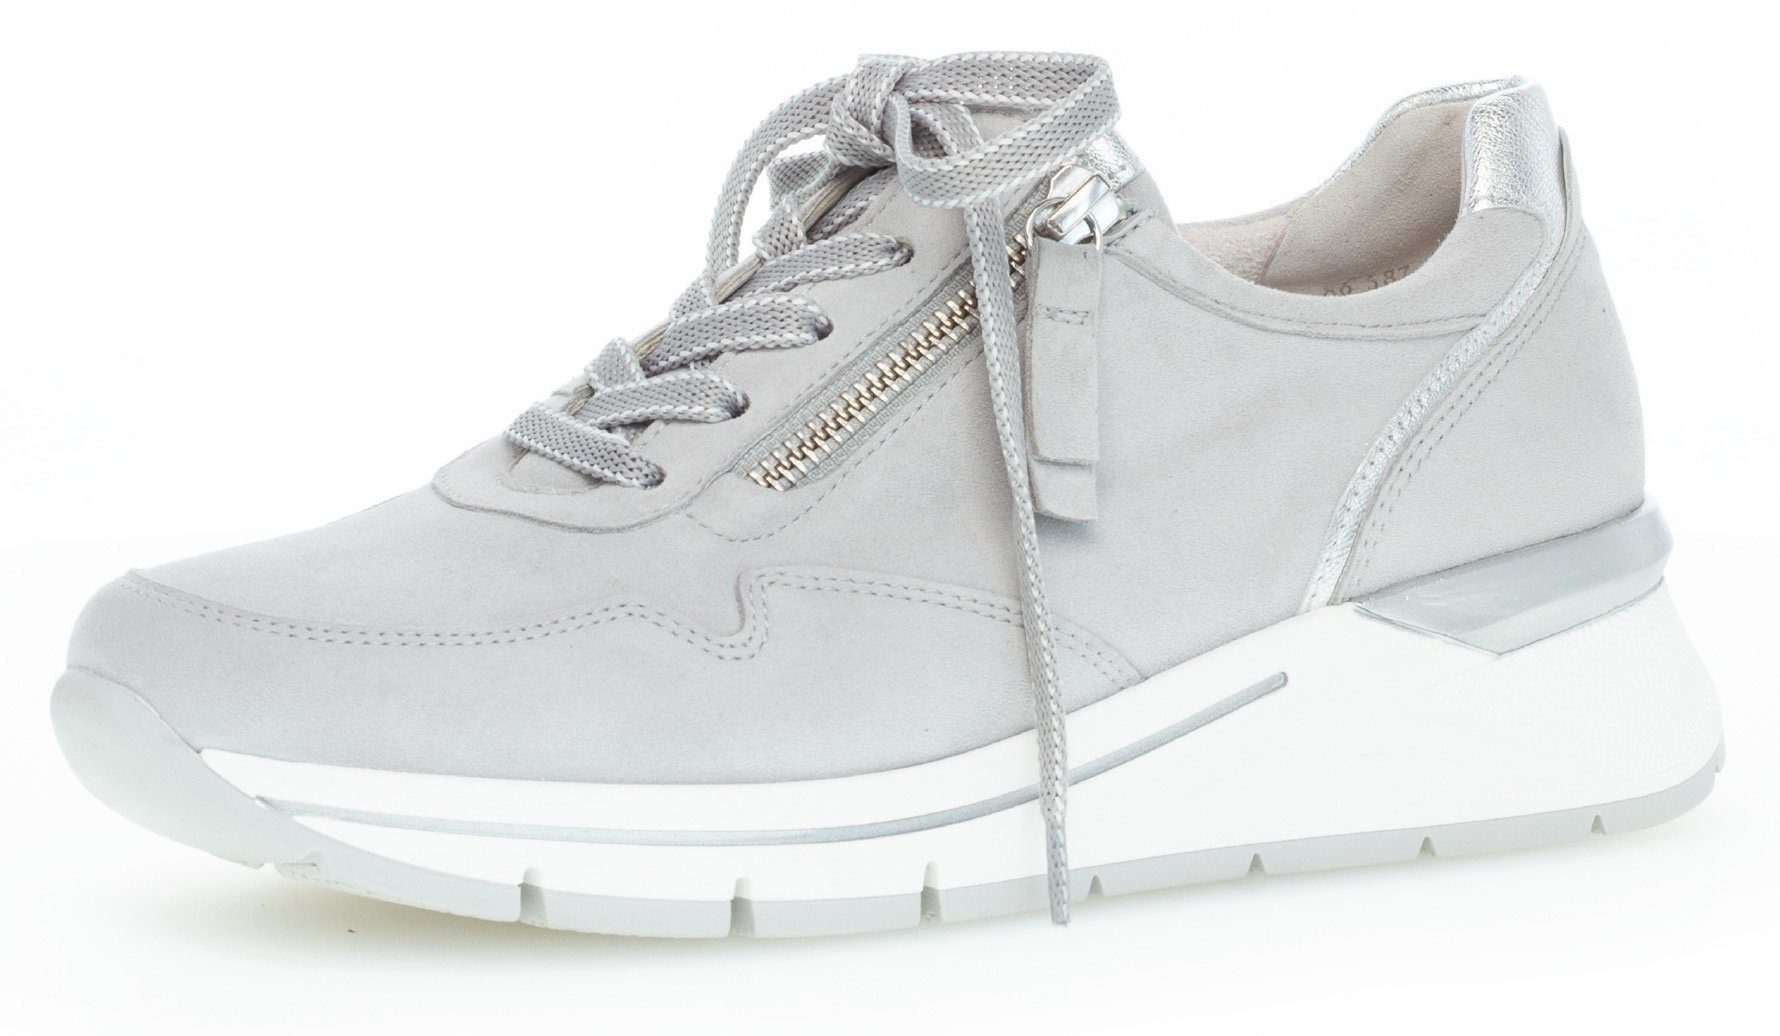 Schuhe Damen Gabor Comfort » Gabor Schuhmode online kaufen | OTTO